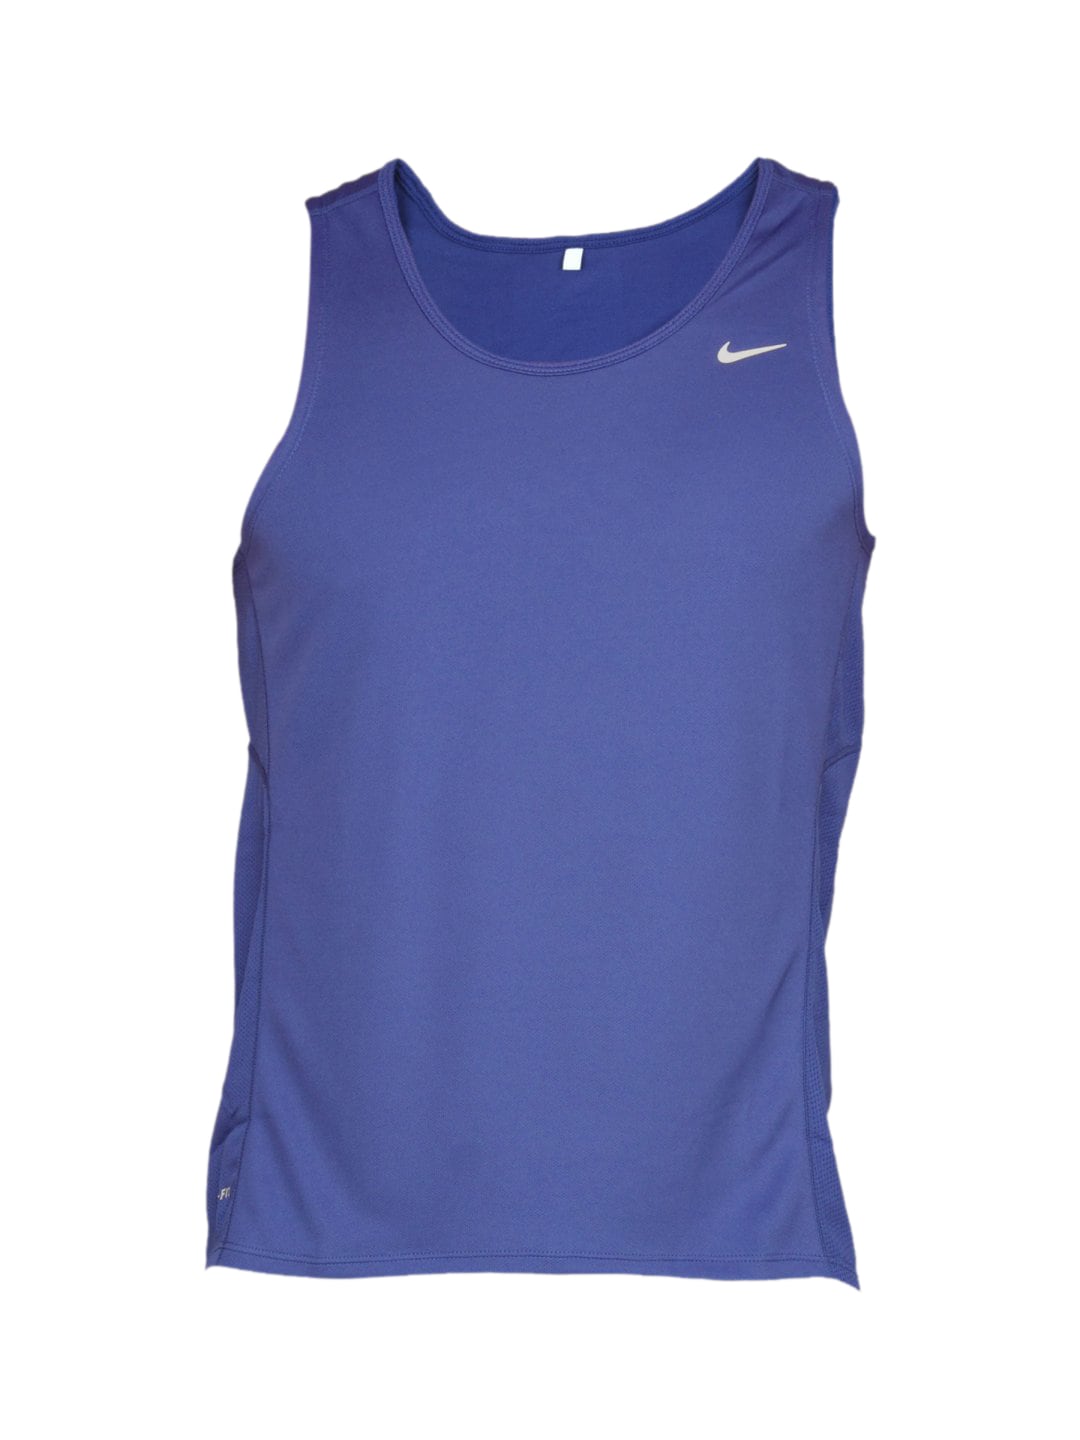 Nike Men's Miler Singlet Blue T-shirt